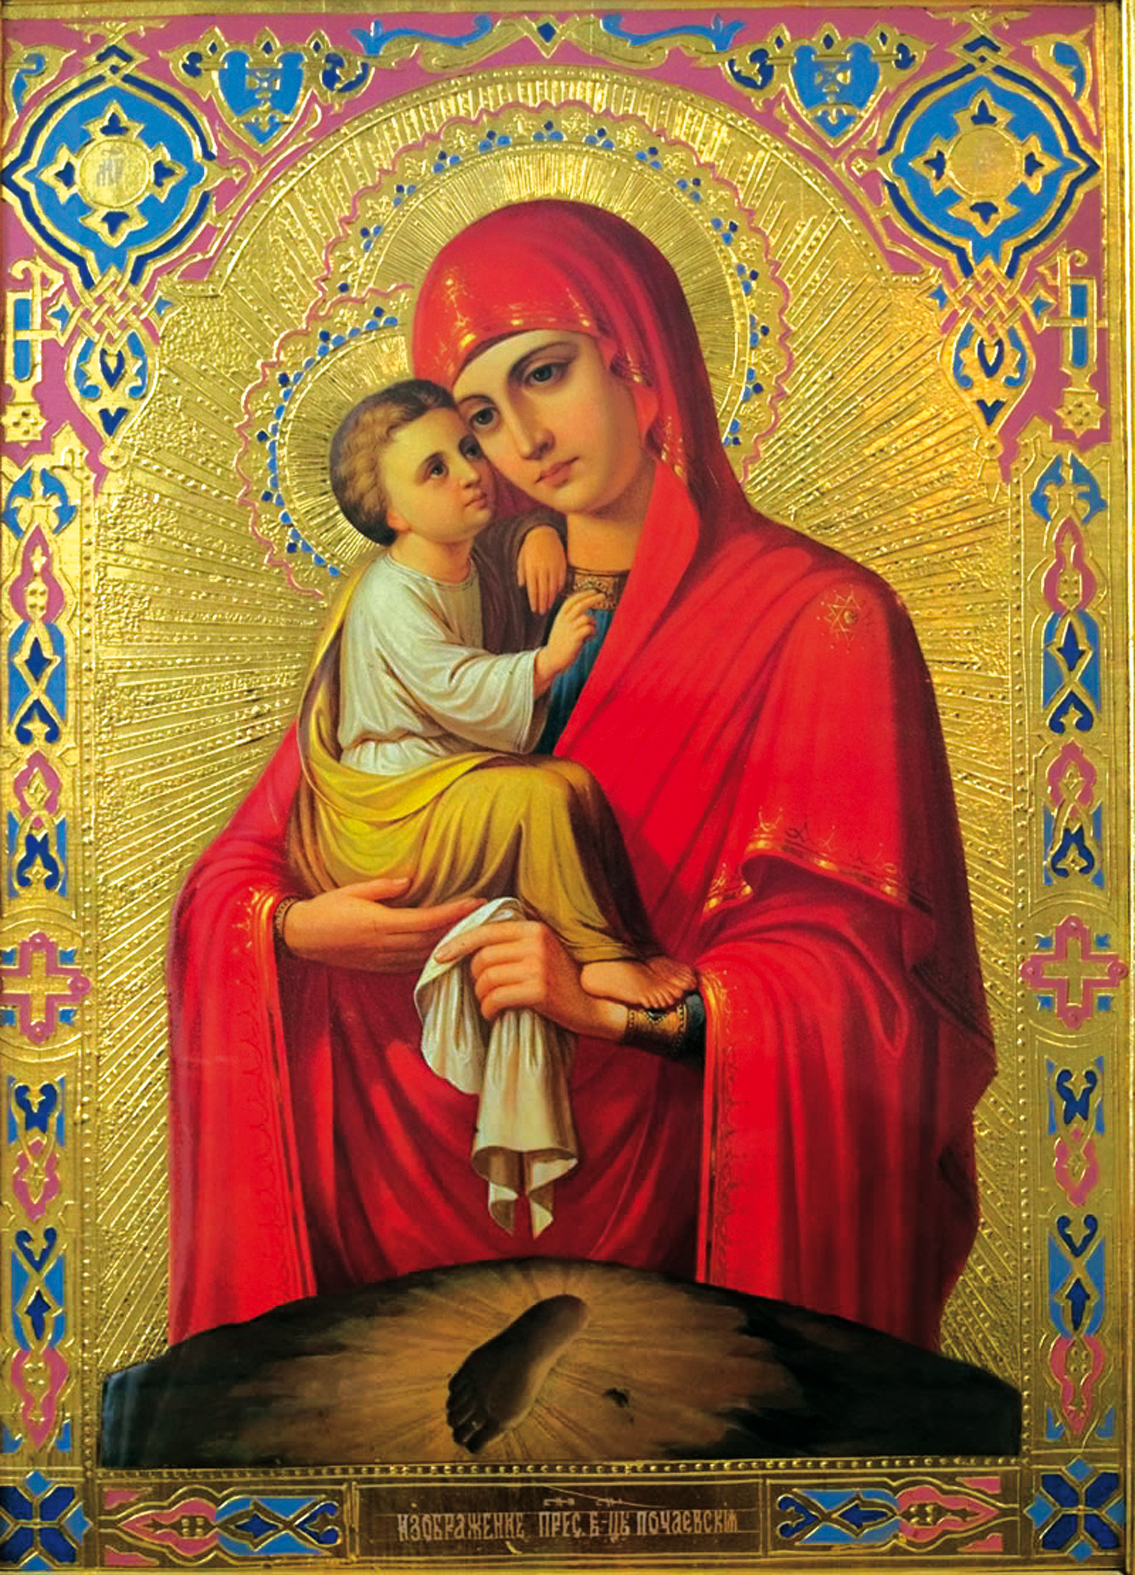 Paso a paso en la Ortodoxia: La Virgen Maria como centro de la Iglesia.